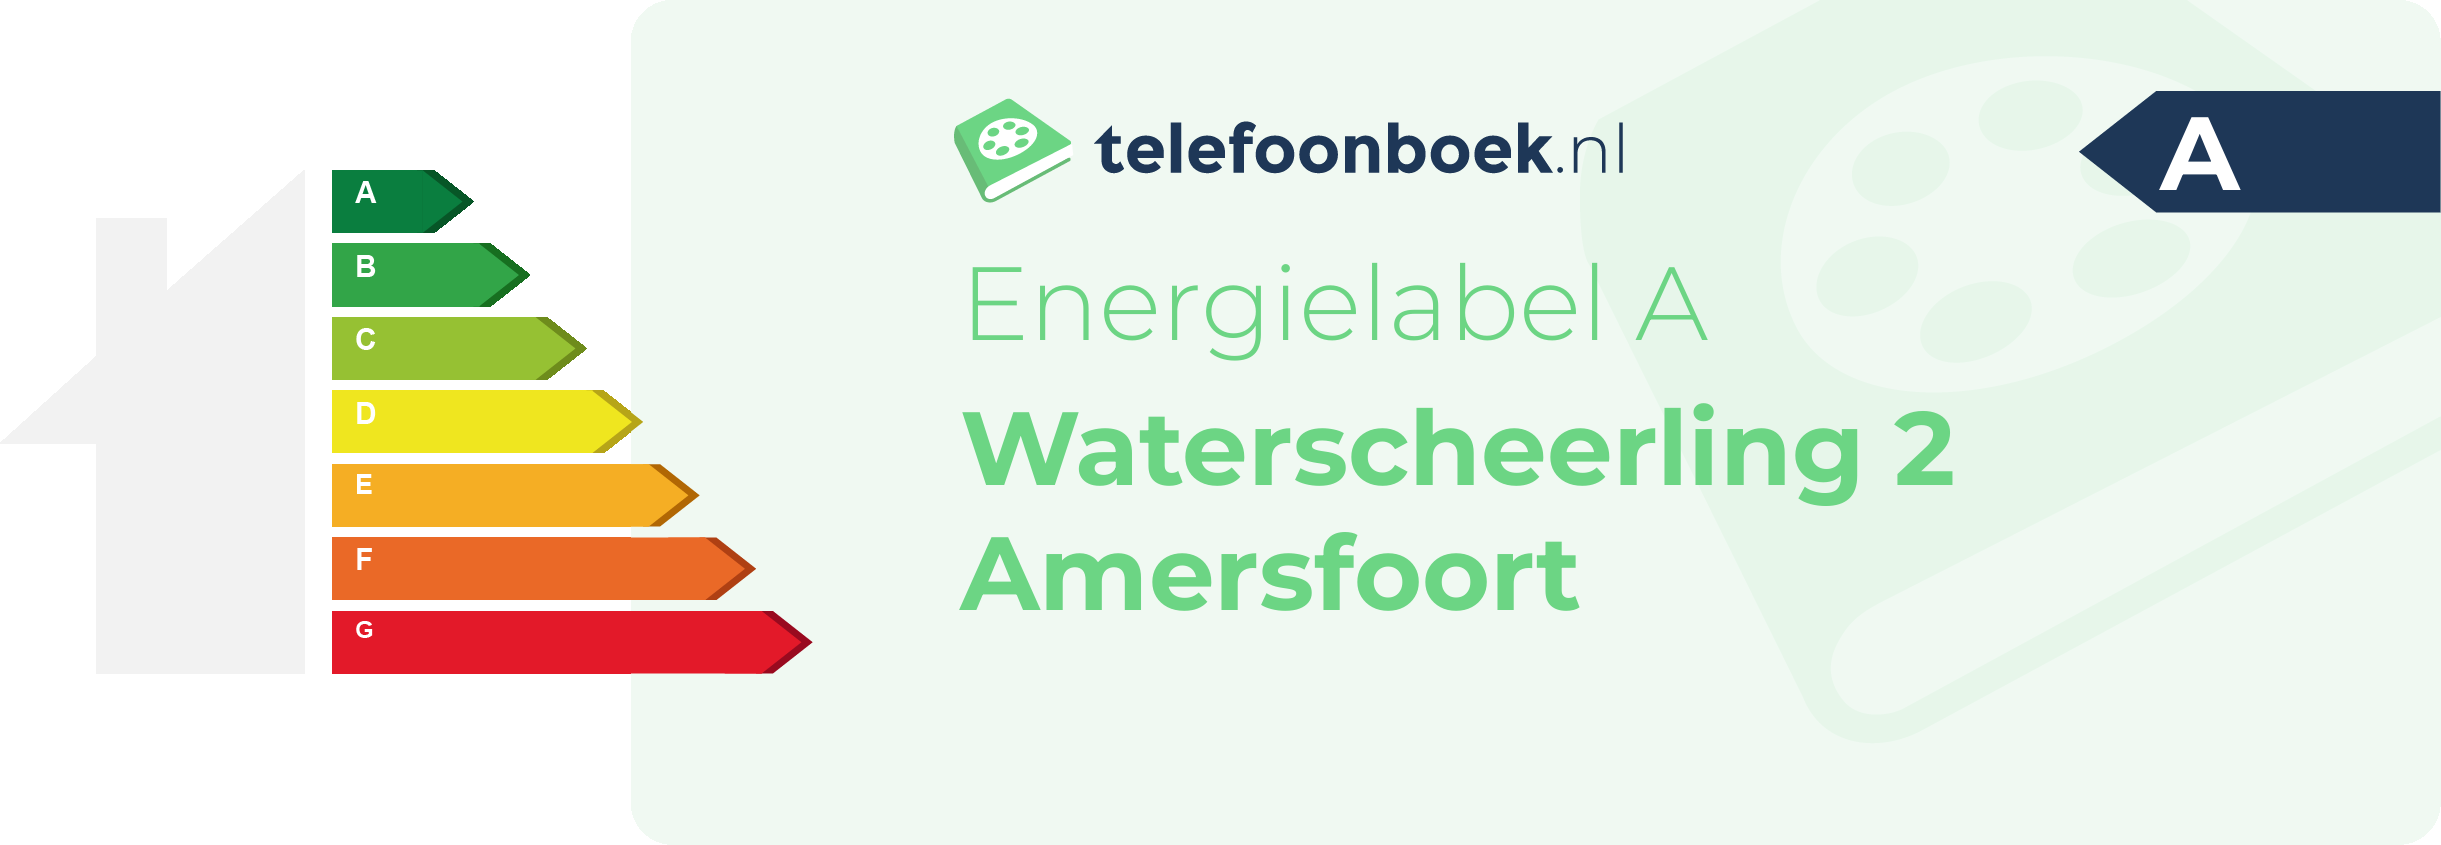 Energielabel Waterscheerling 2 Amersfoort